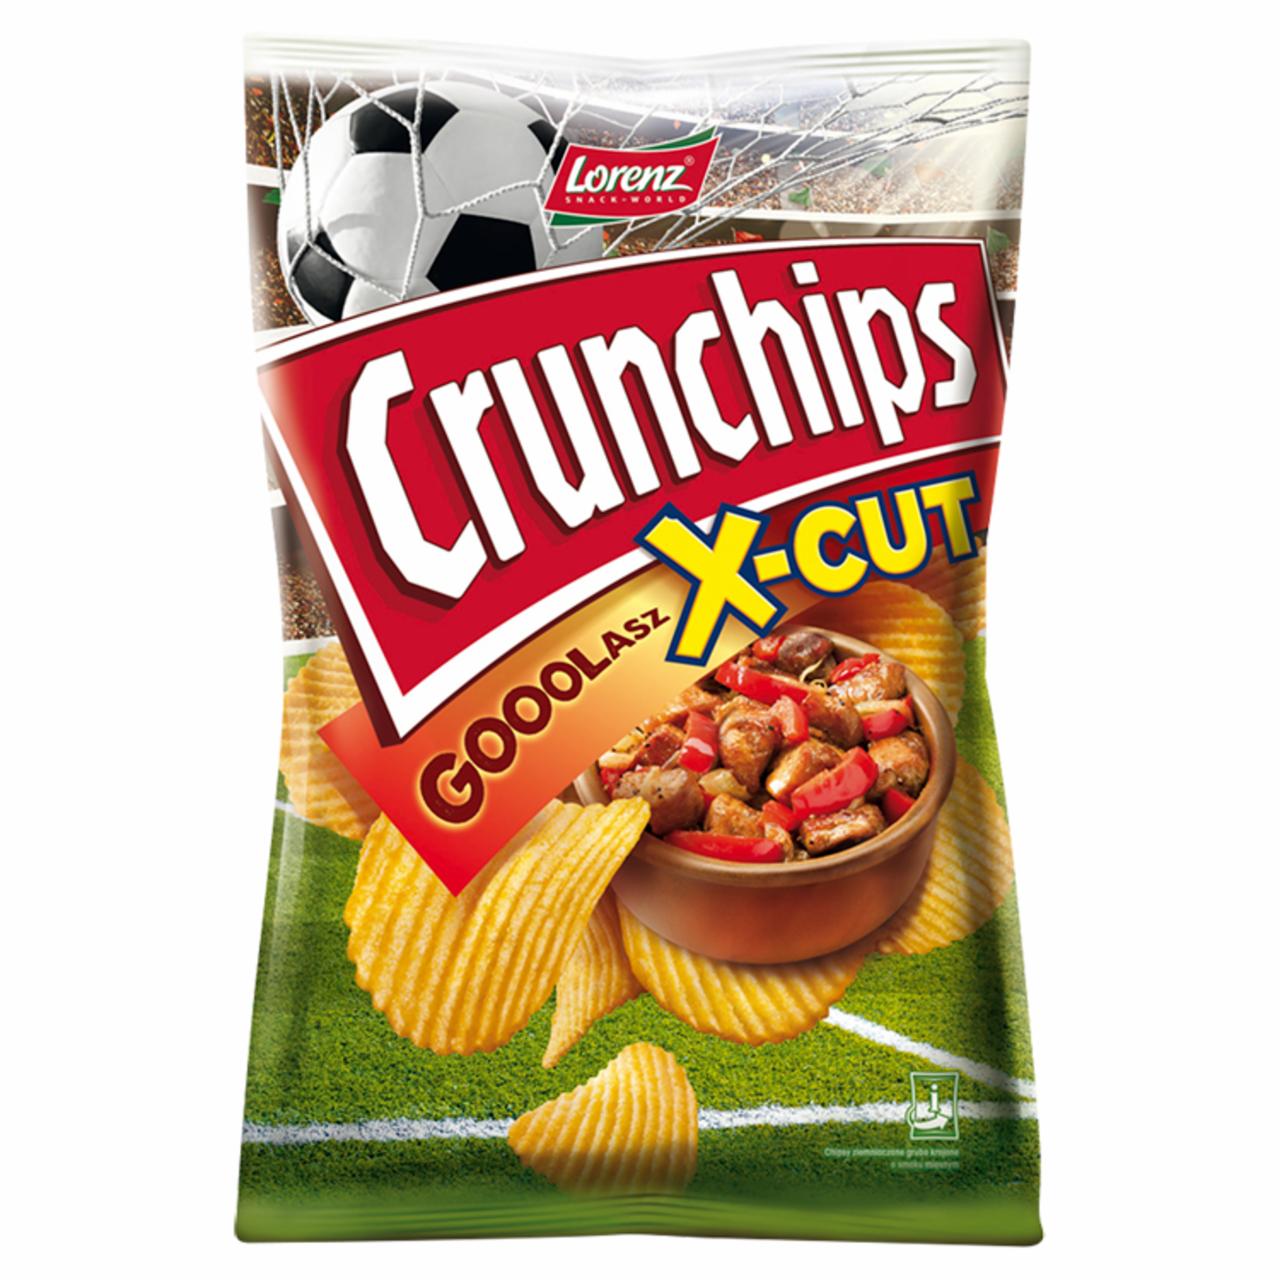 Zdjęcia - Crunchips X-Cut Chipsy ziemniaczane o smaku gooolasz 140 g